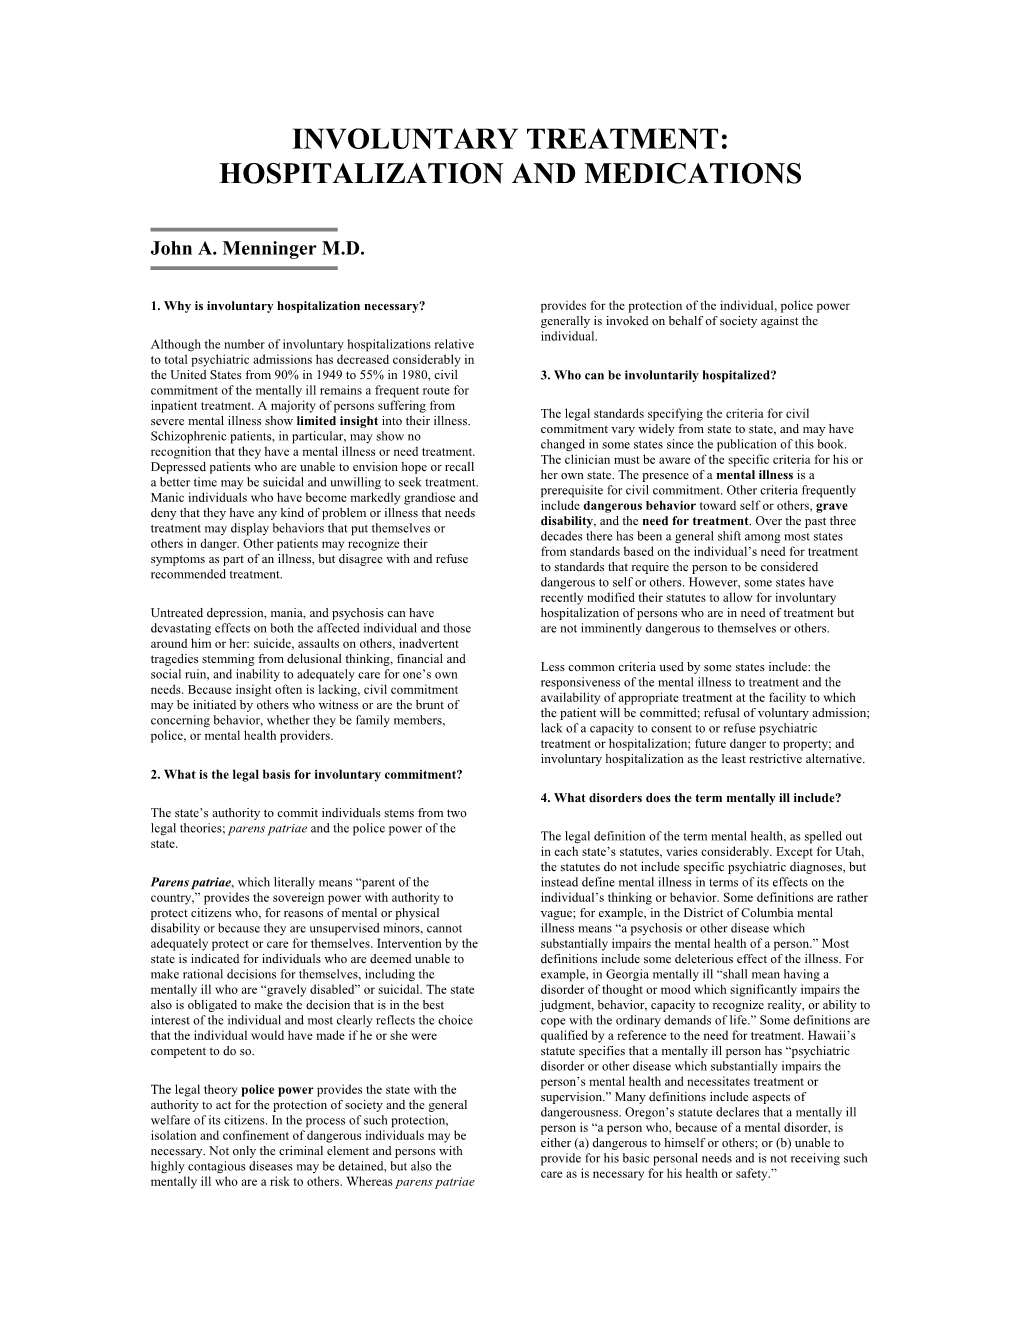 Involuntary Treatment: Hospitalization and Medications